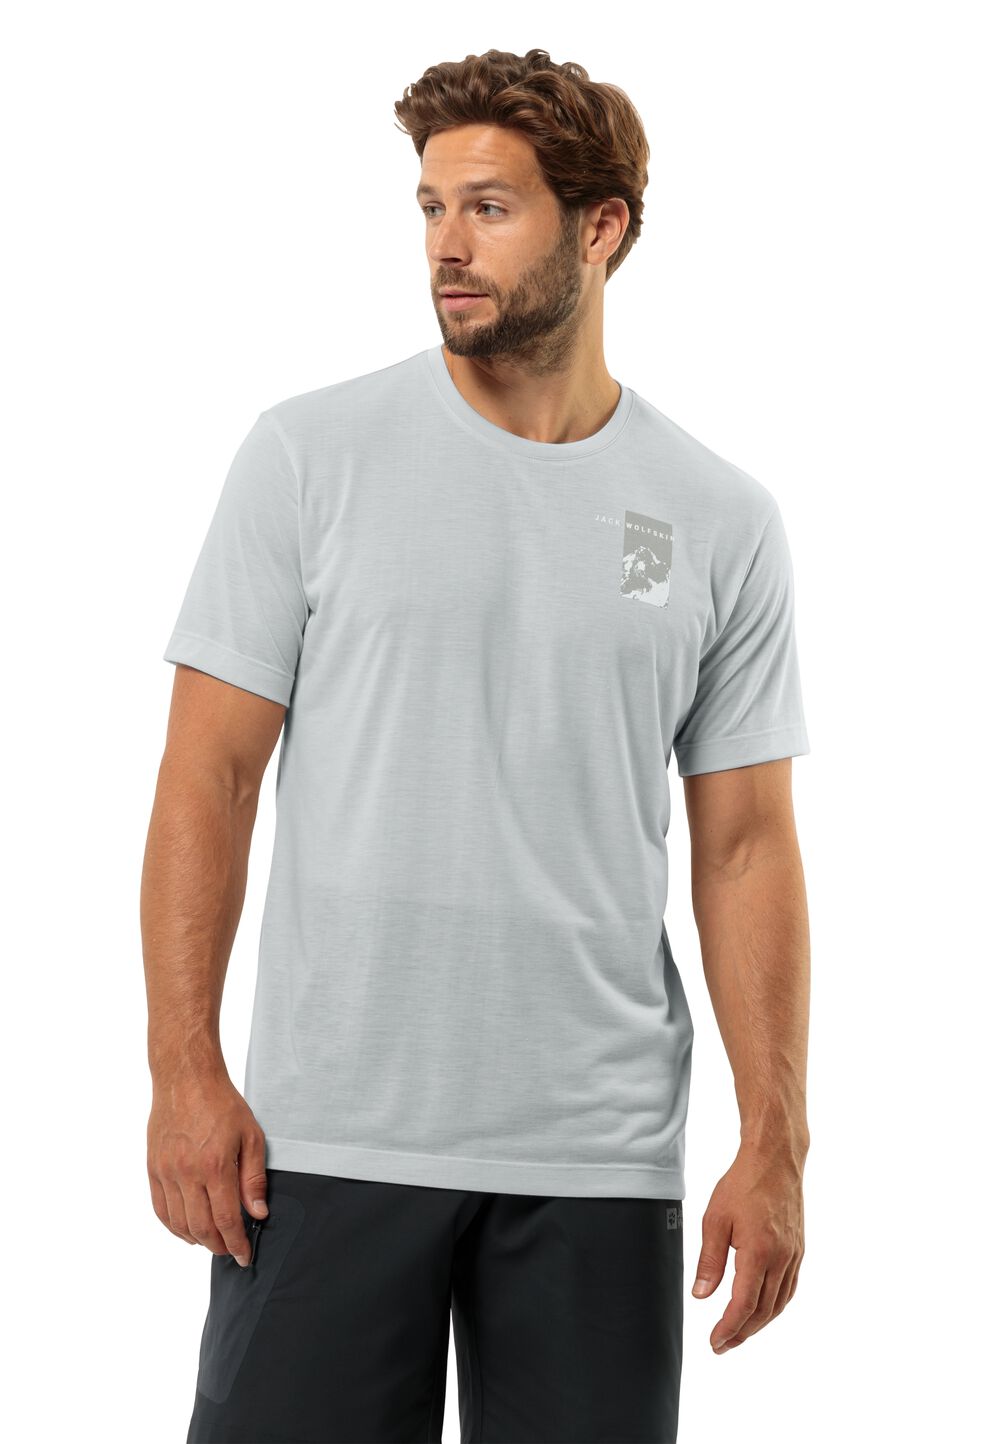 Jack Wolfskin Funktionsshirt Herren Vonnan S/S Graphic T-Shirt Men S grau cool grey von Jack Wolfskin